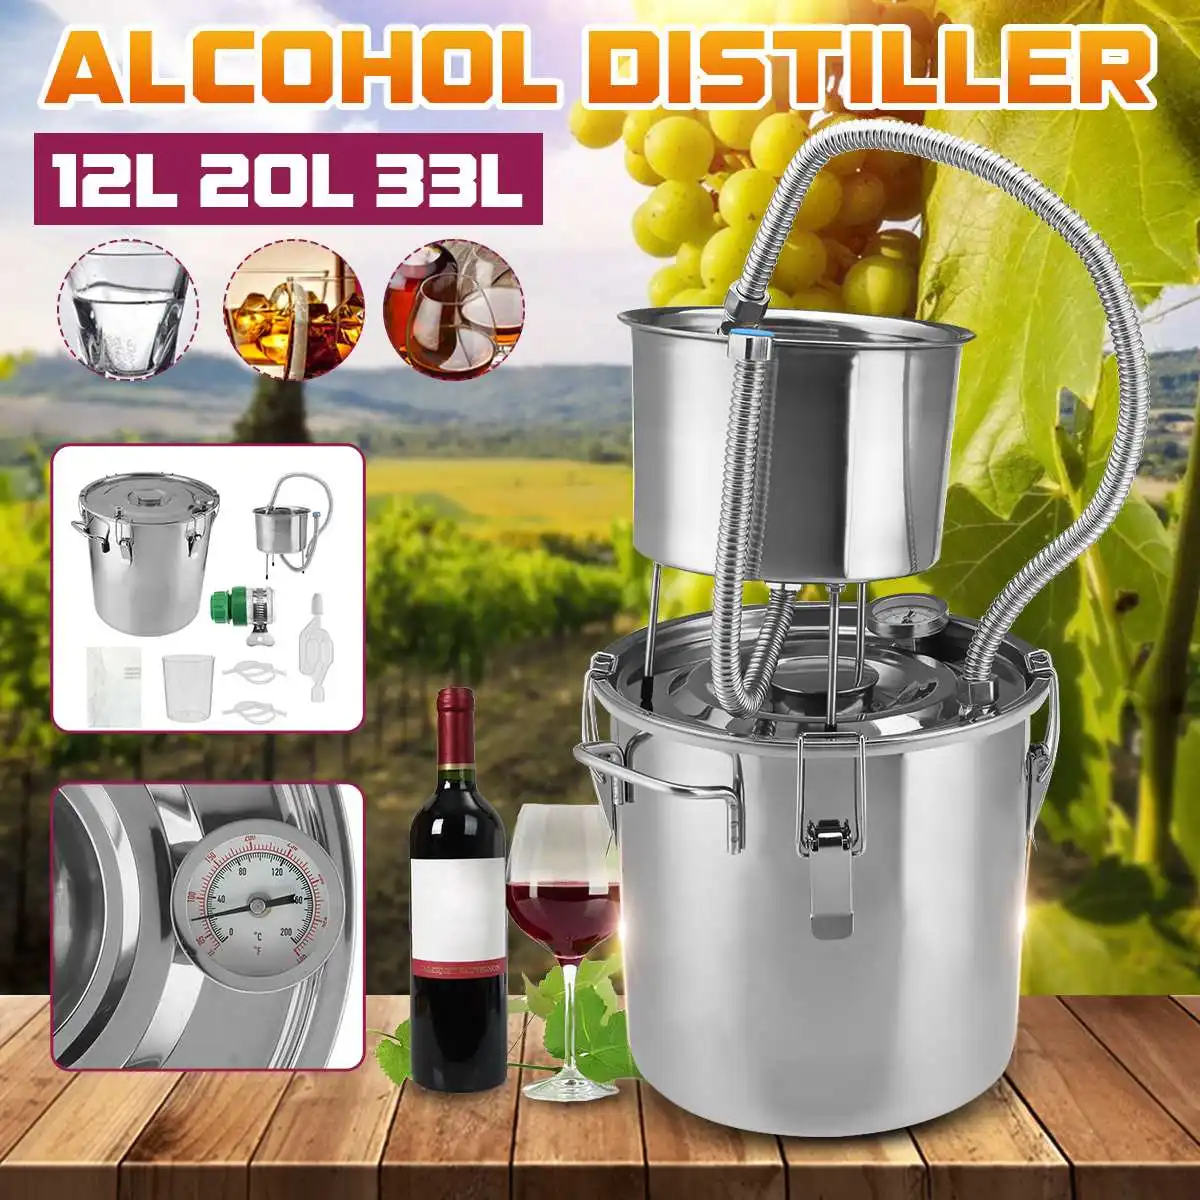 

12 л/20 л/33 л самодельный домашний дистиллятор для пивоварения Moonshine алкоголь из нержавеющей меди вода вино бренди эфирное масло комплект для ...